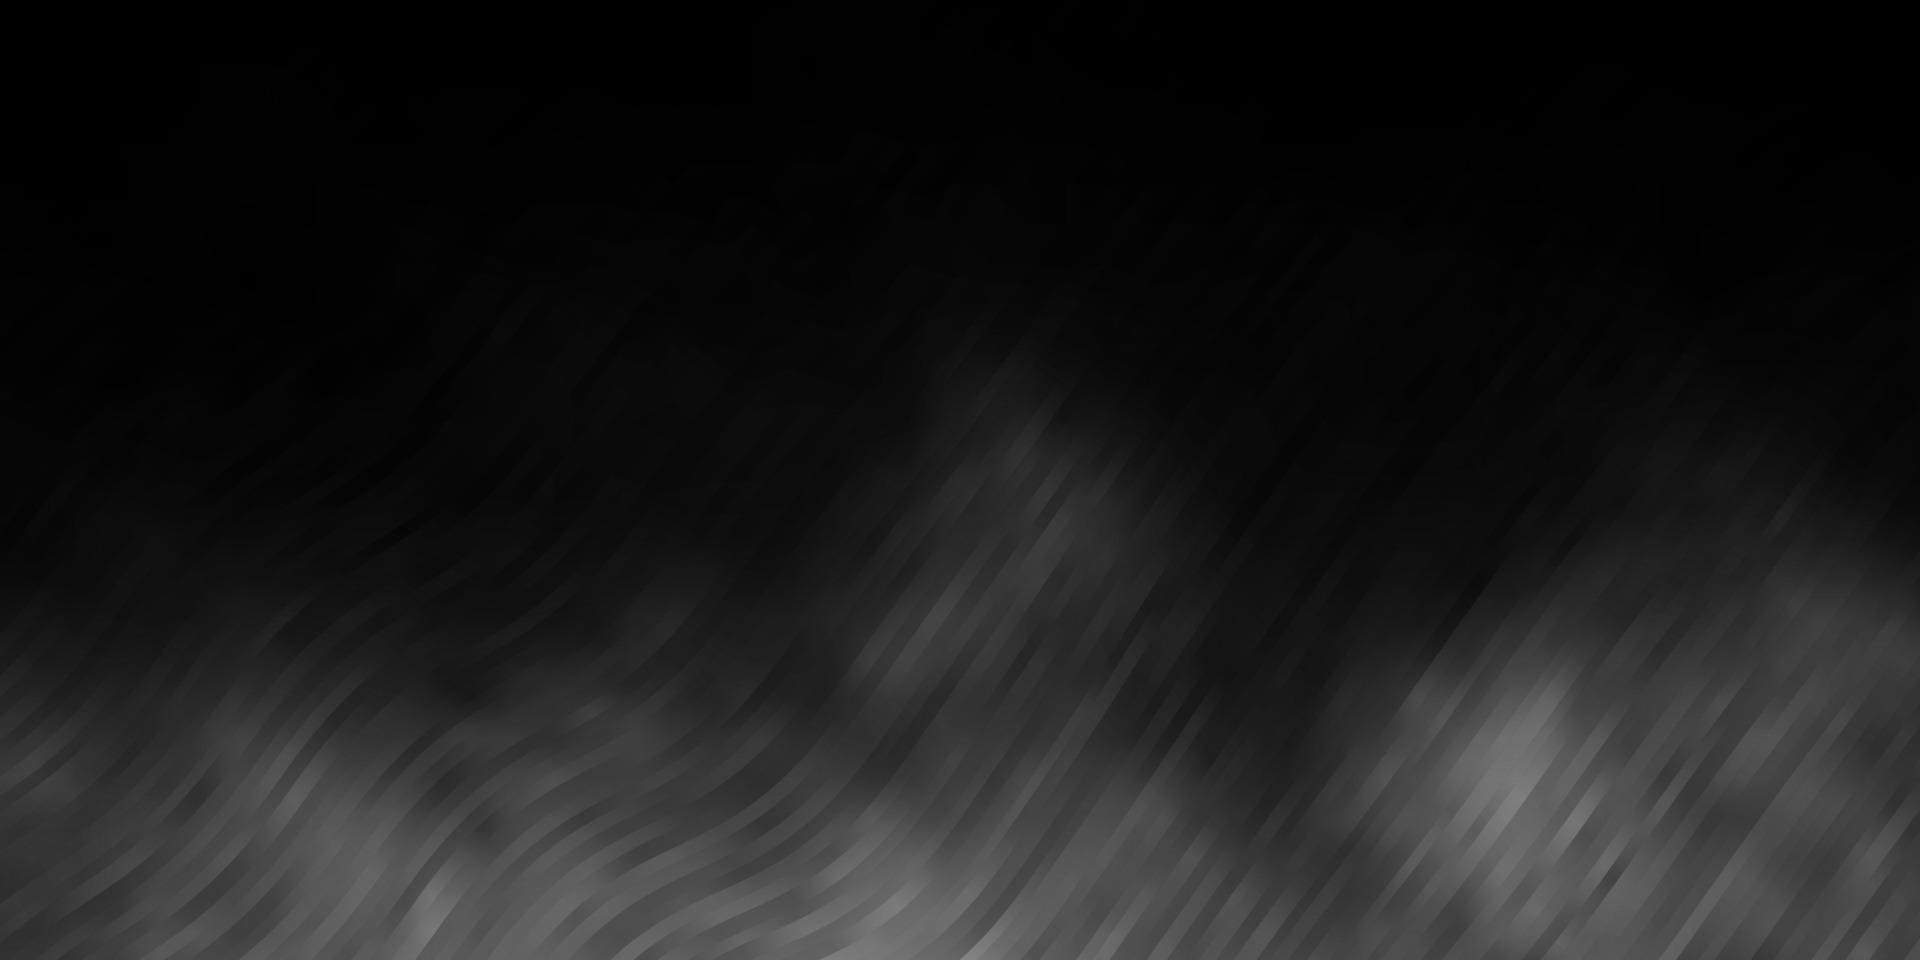 sfondo vettoriale grigio chiaro con linee piegate.